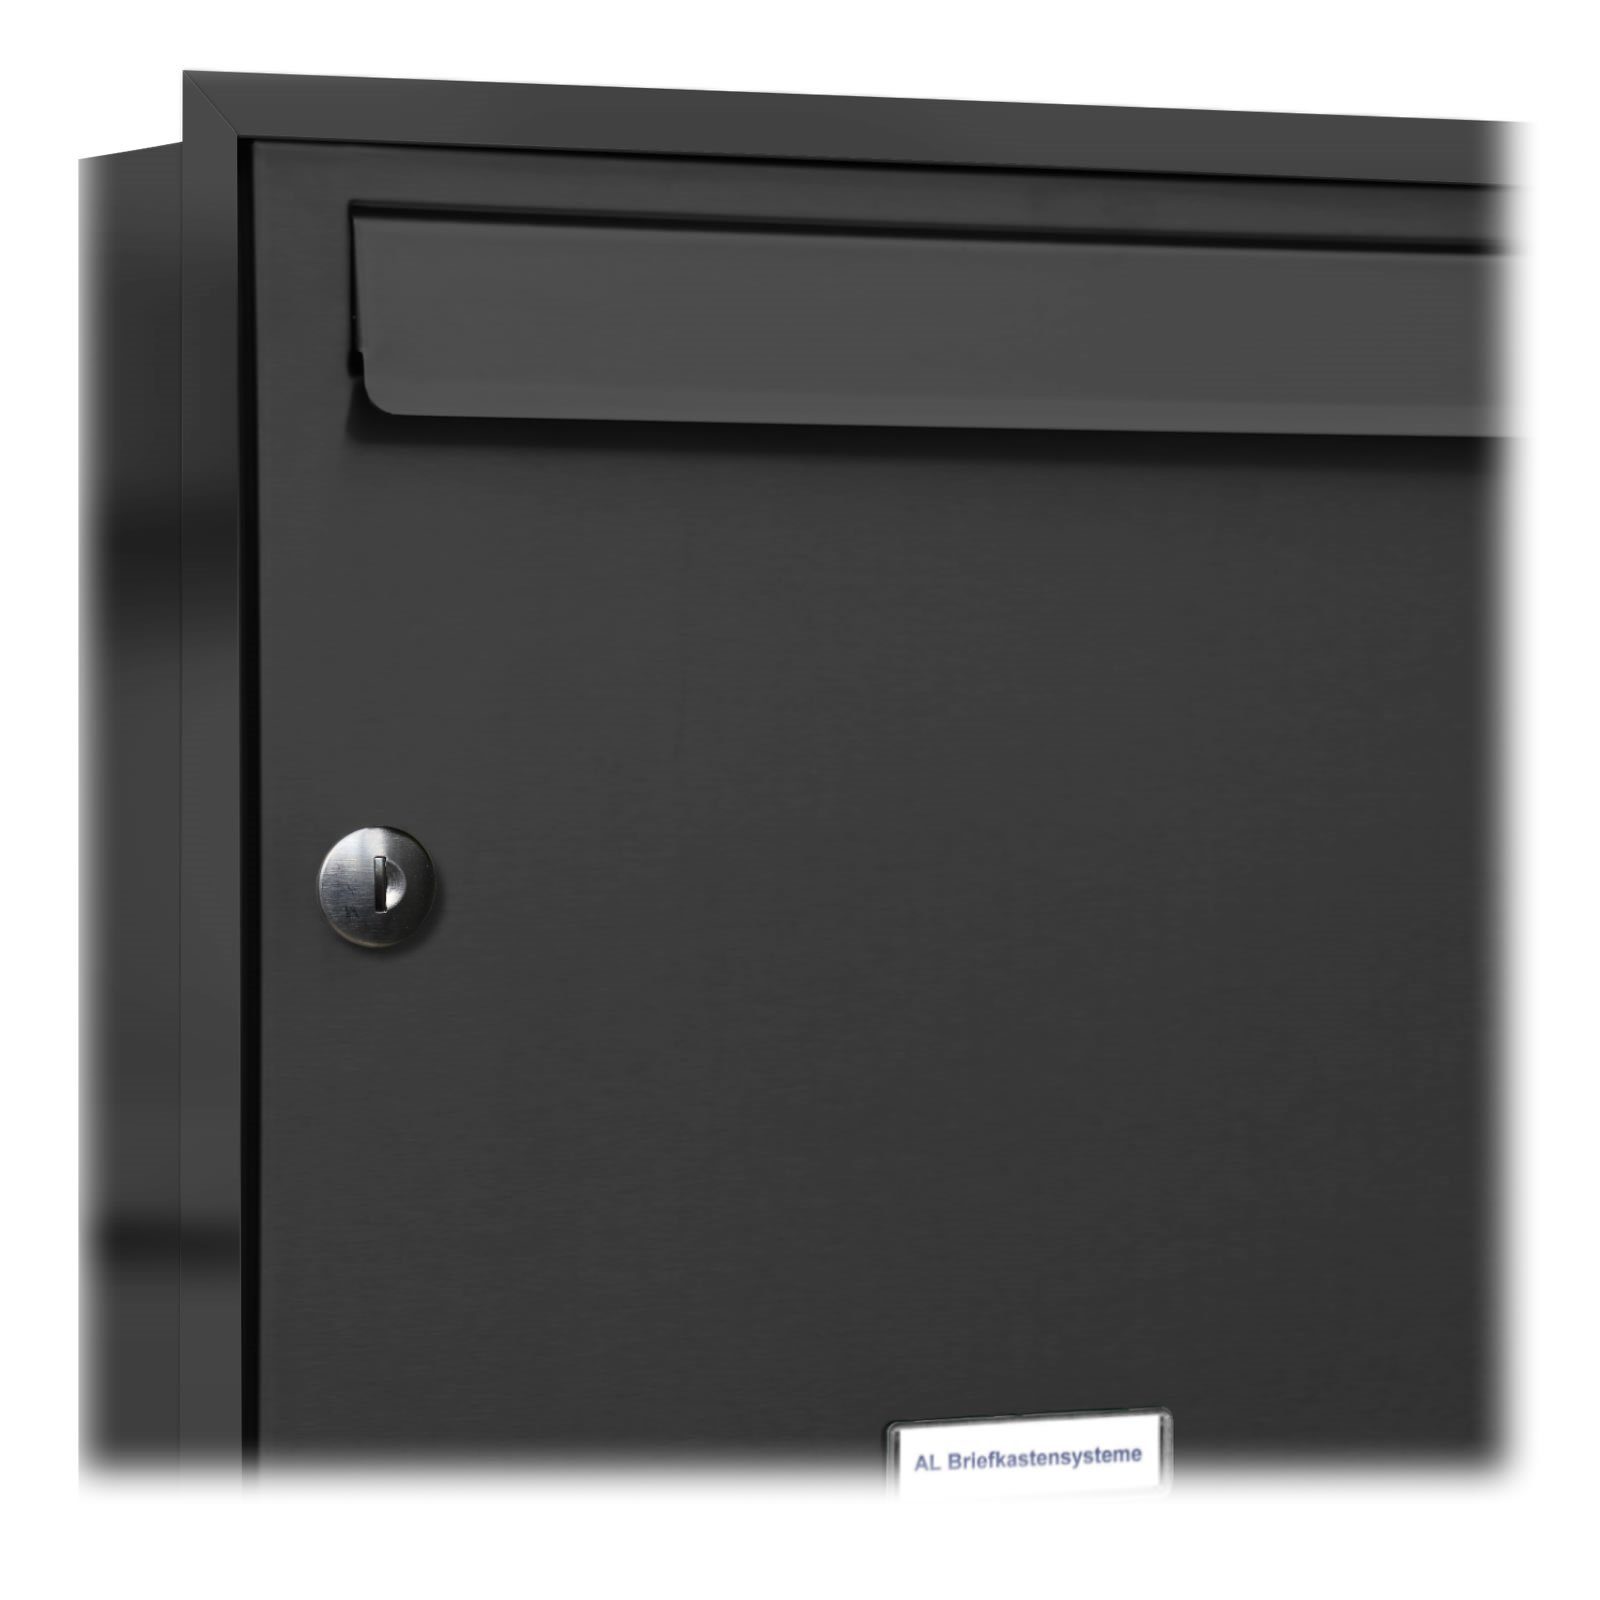 5er Fach Premium Unterputz AL Wandbriefkasten Klingel Anthrazit 2x3 5 S Briefkasten Briefkastensysteme mit